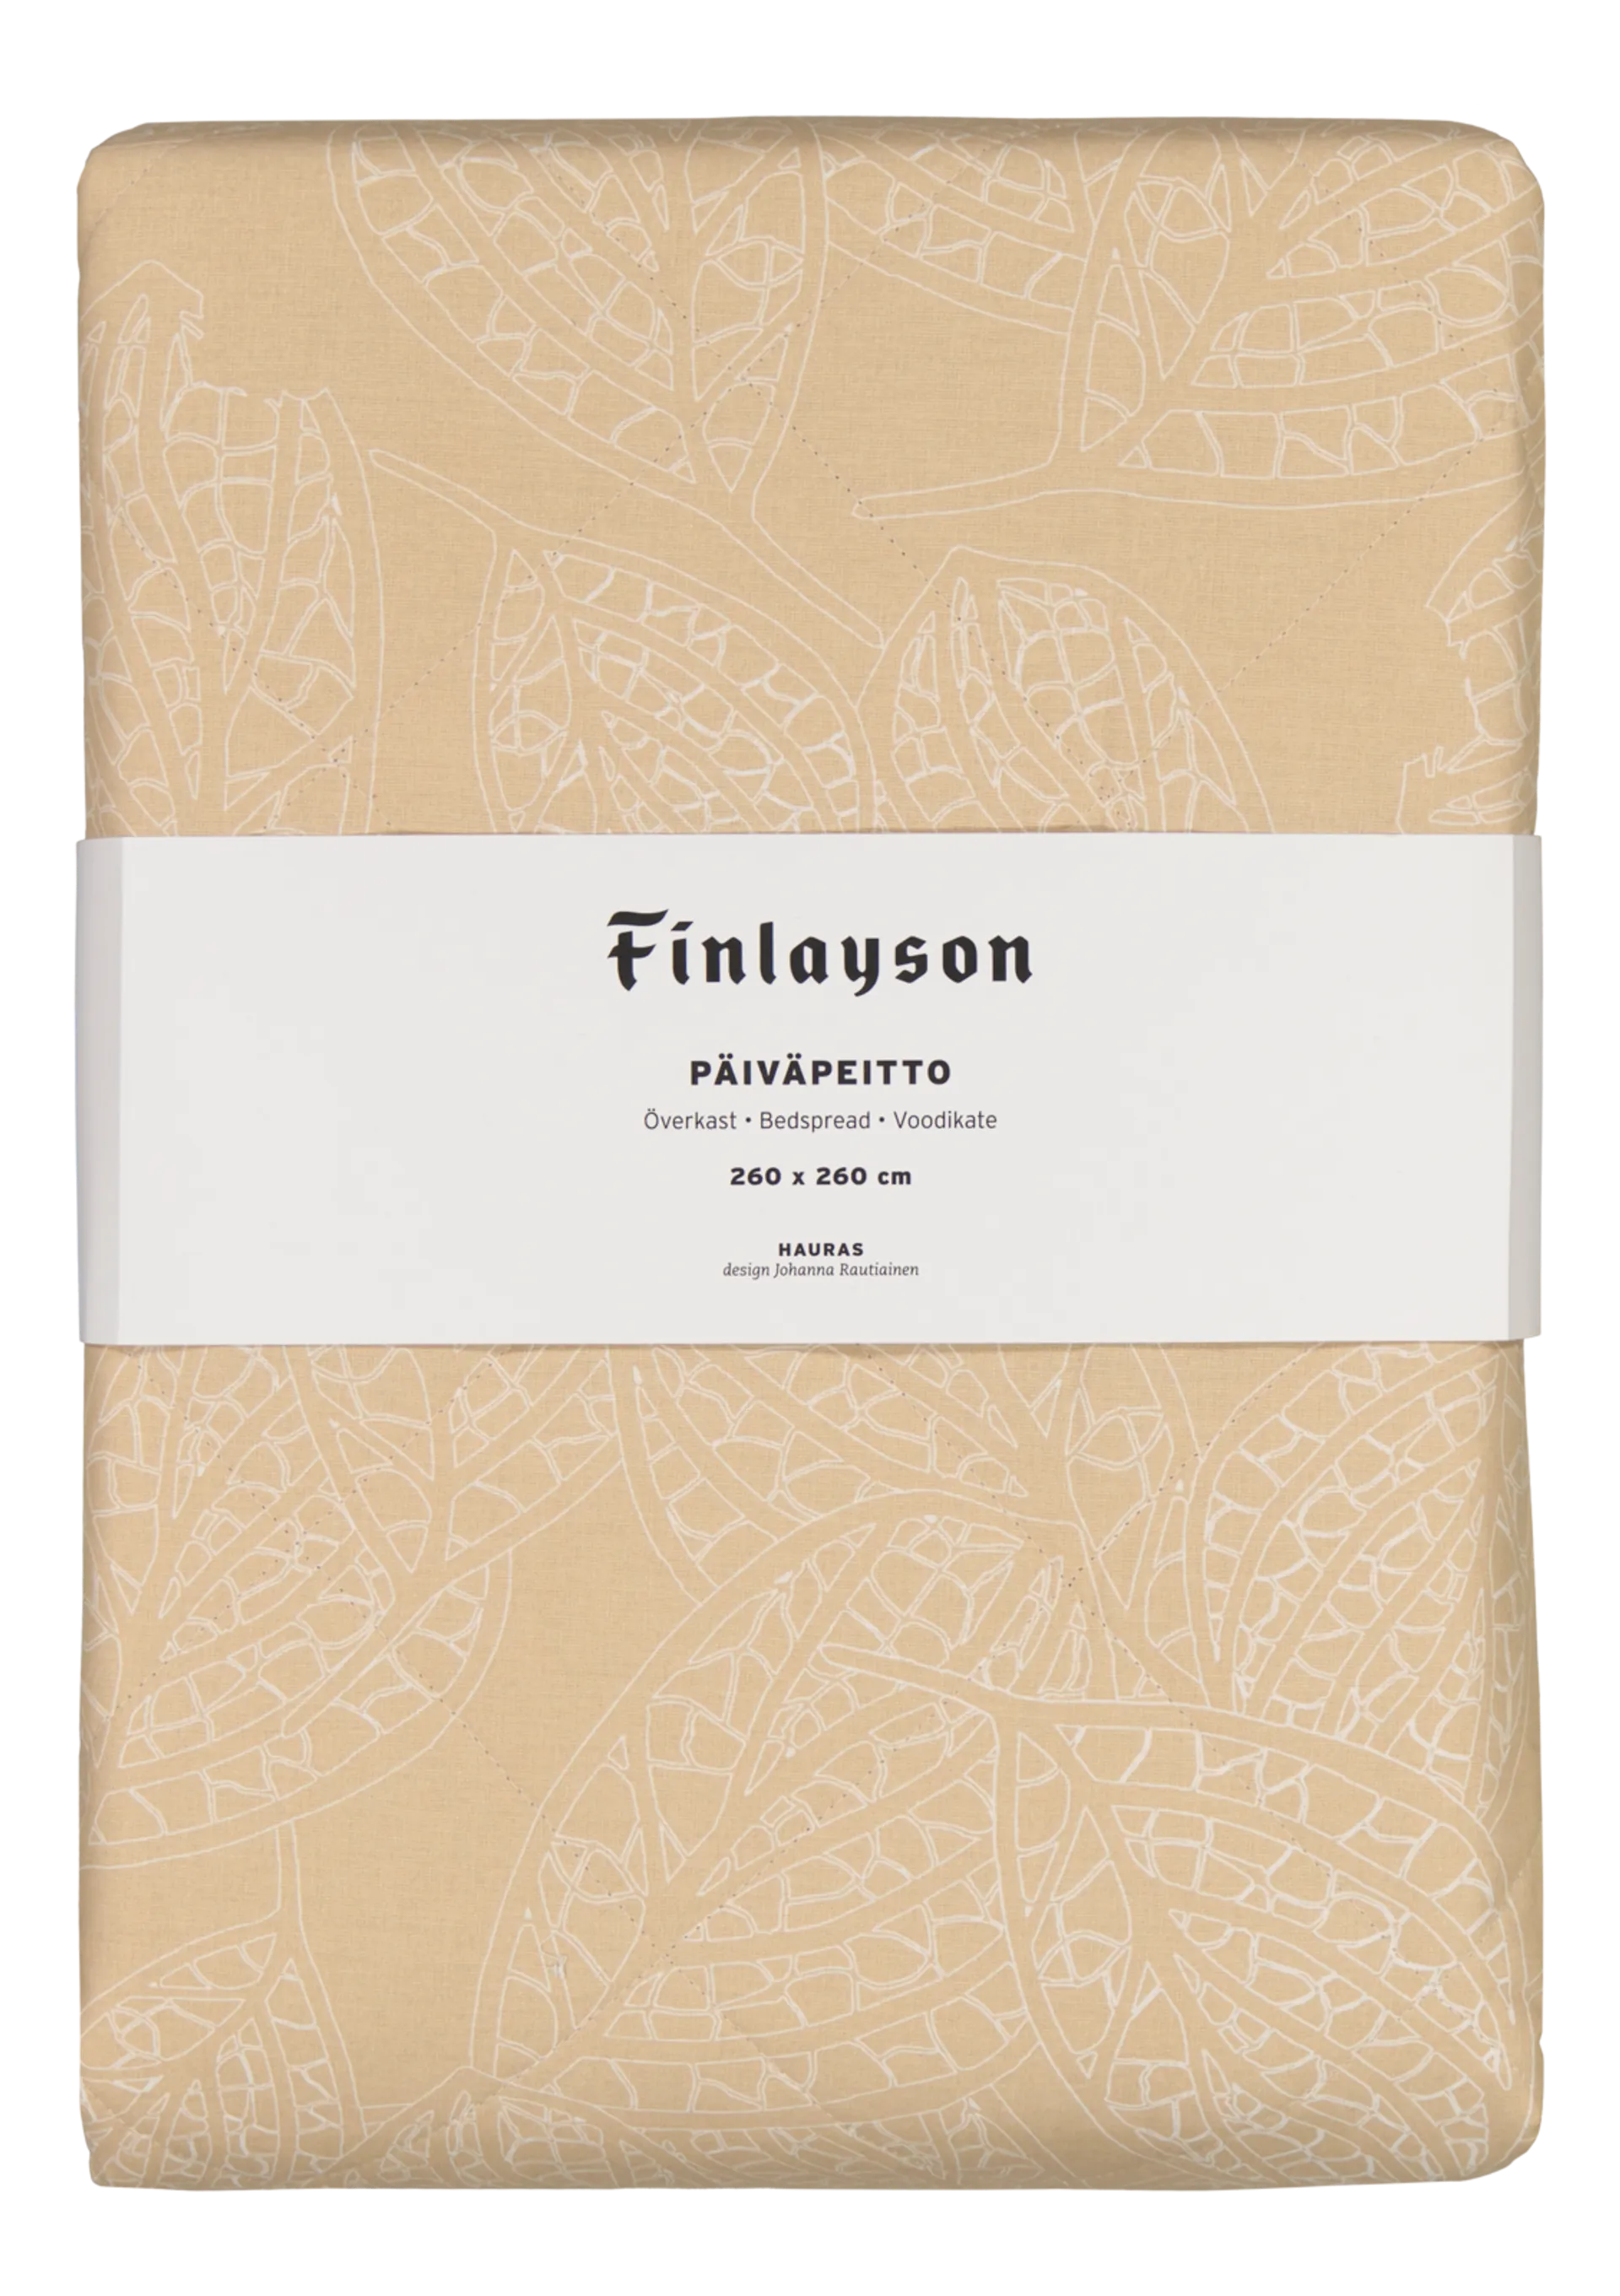 Finlayson päiväpeitto Hauras 260x260 cm beige - 2